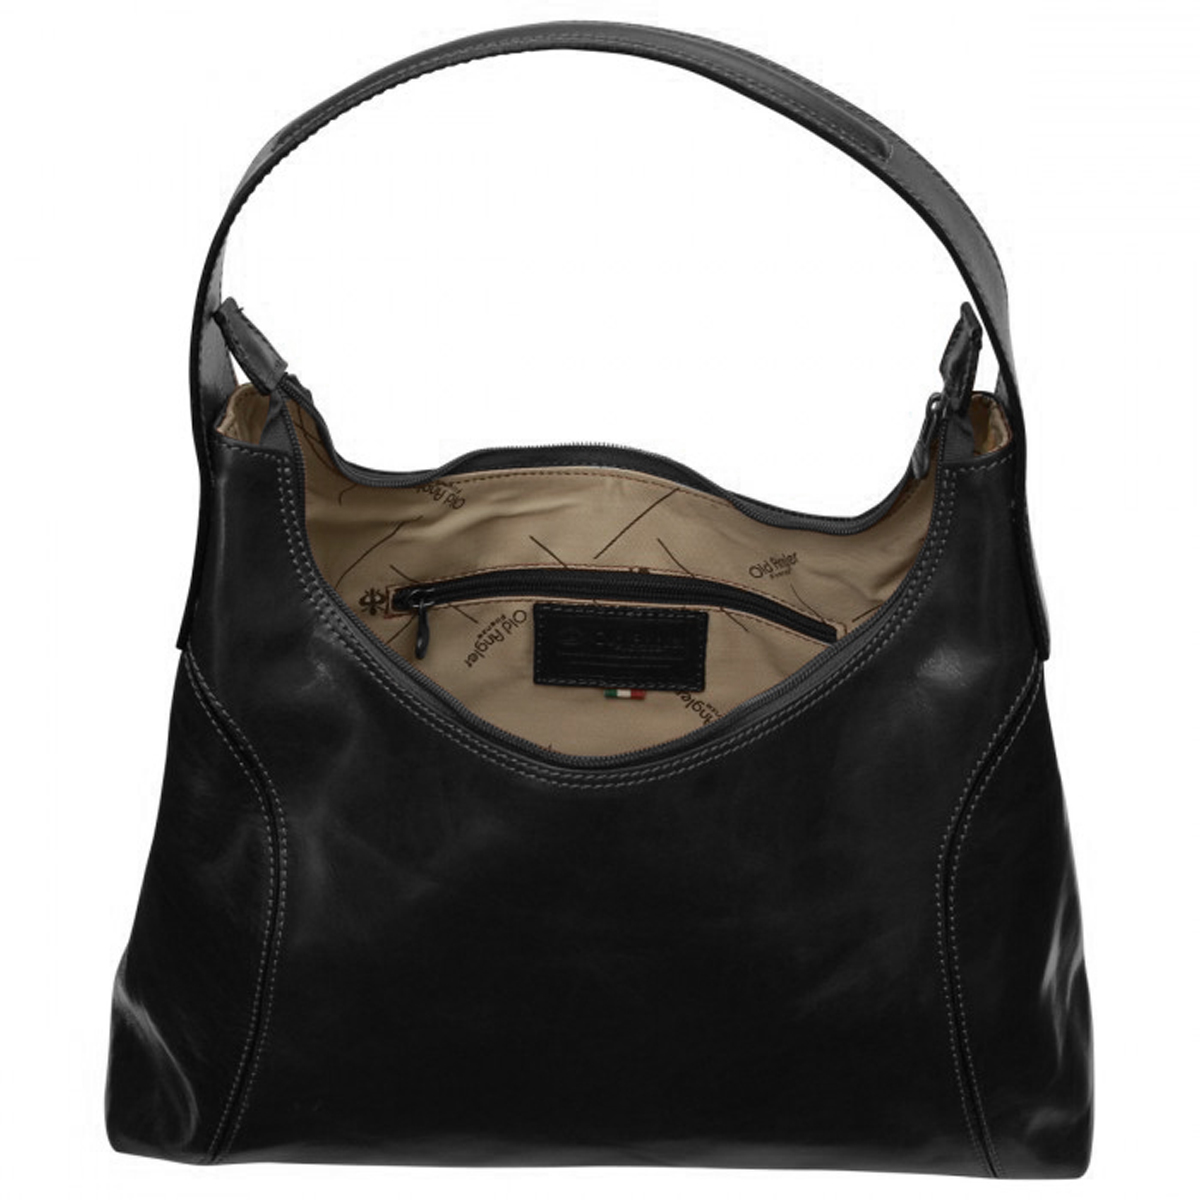 Women's leather shoulder bag - Black | 069105NE UK | Old Angler Firenze